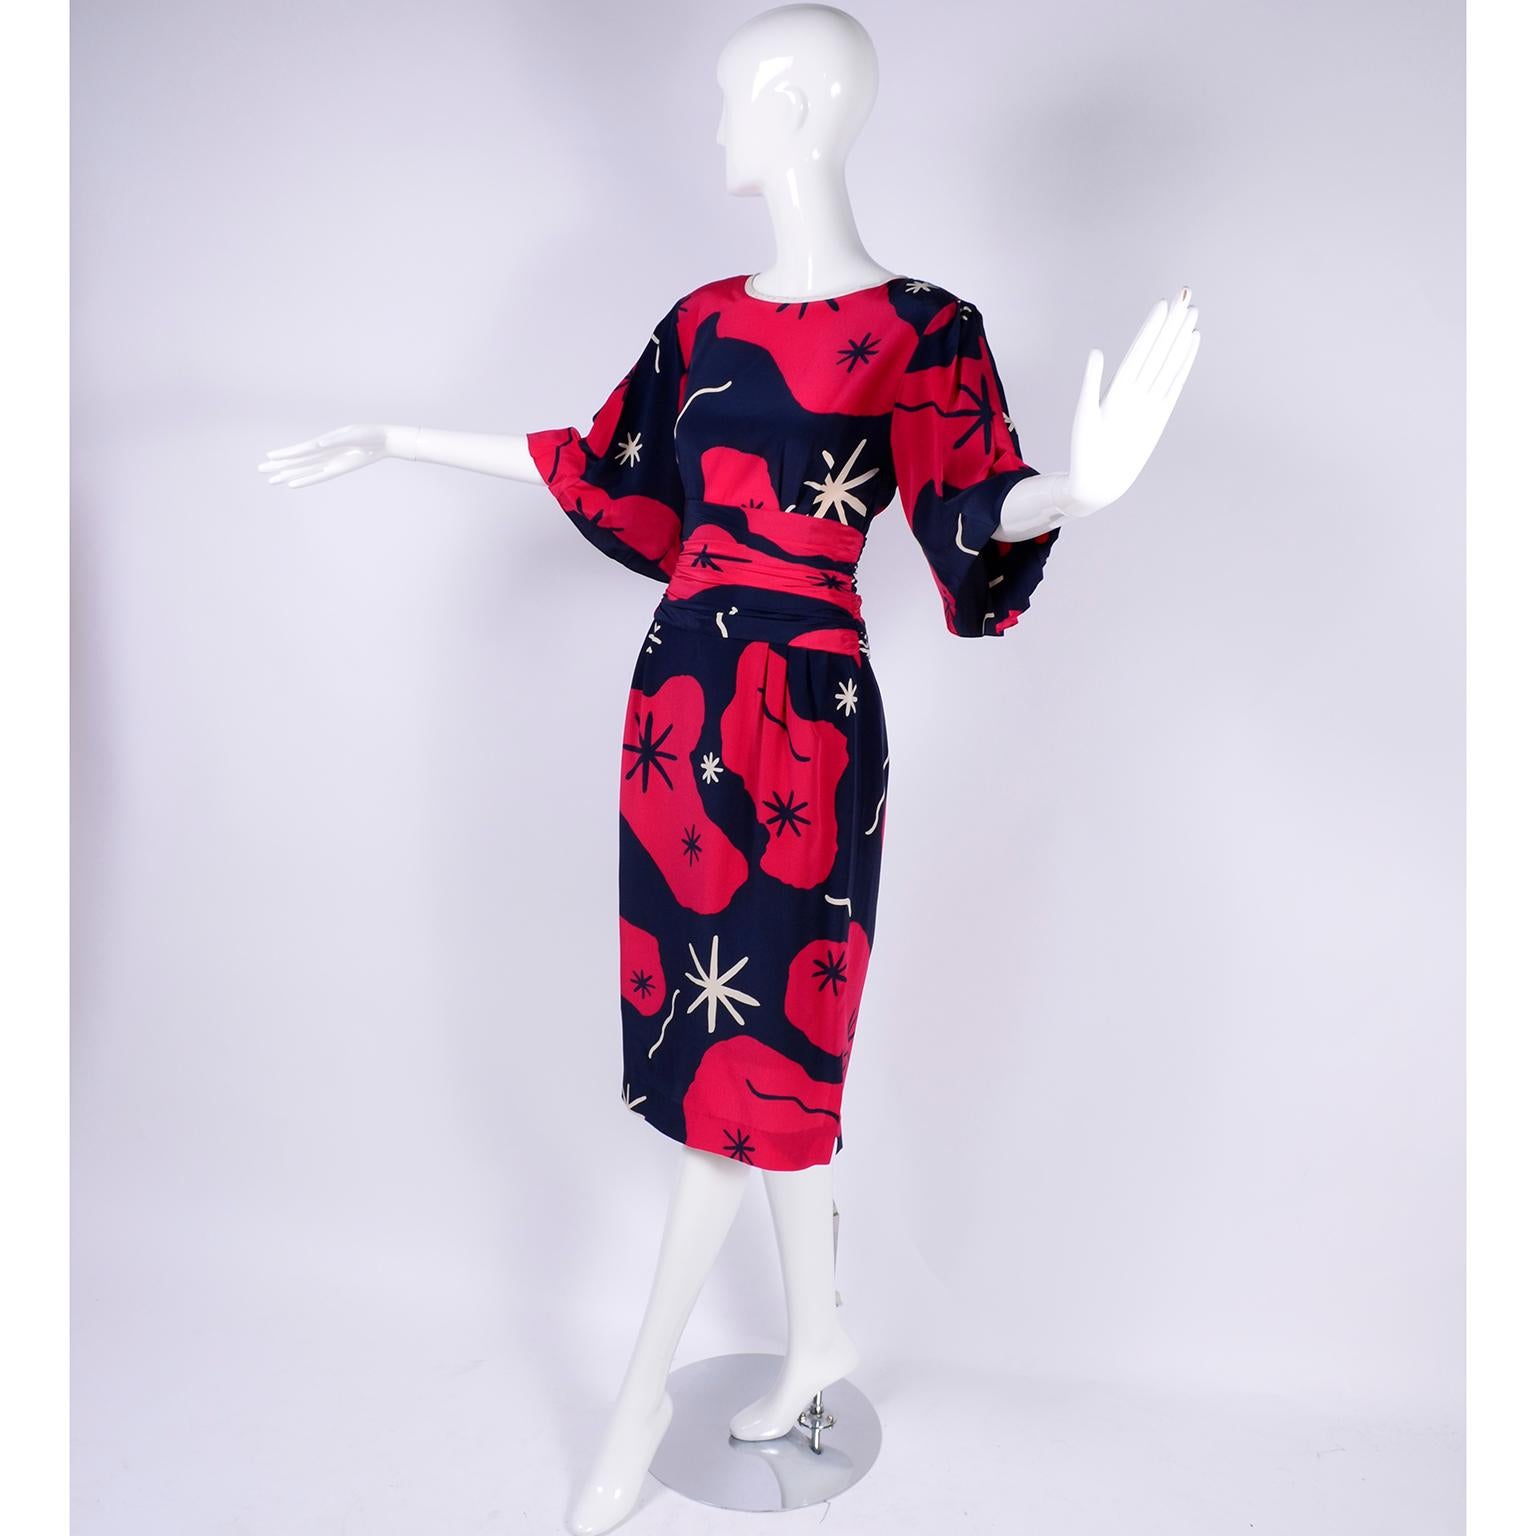 Women's Mona Routier Paris Vintage Dress in Silk Red & Blue Starburst Asterisk Print